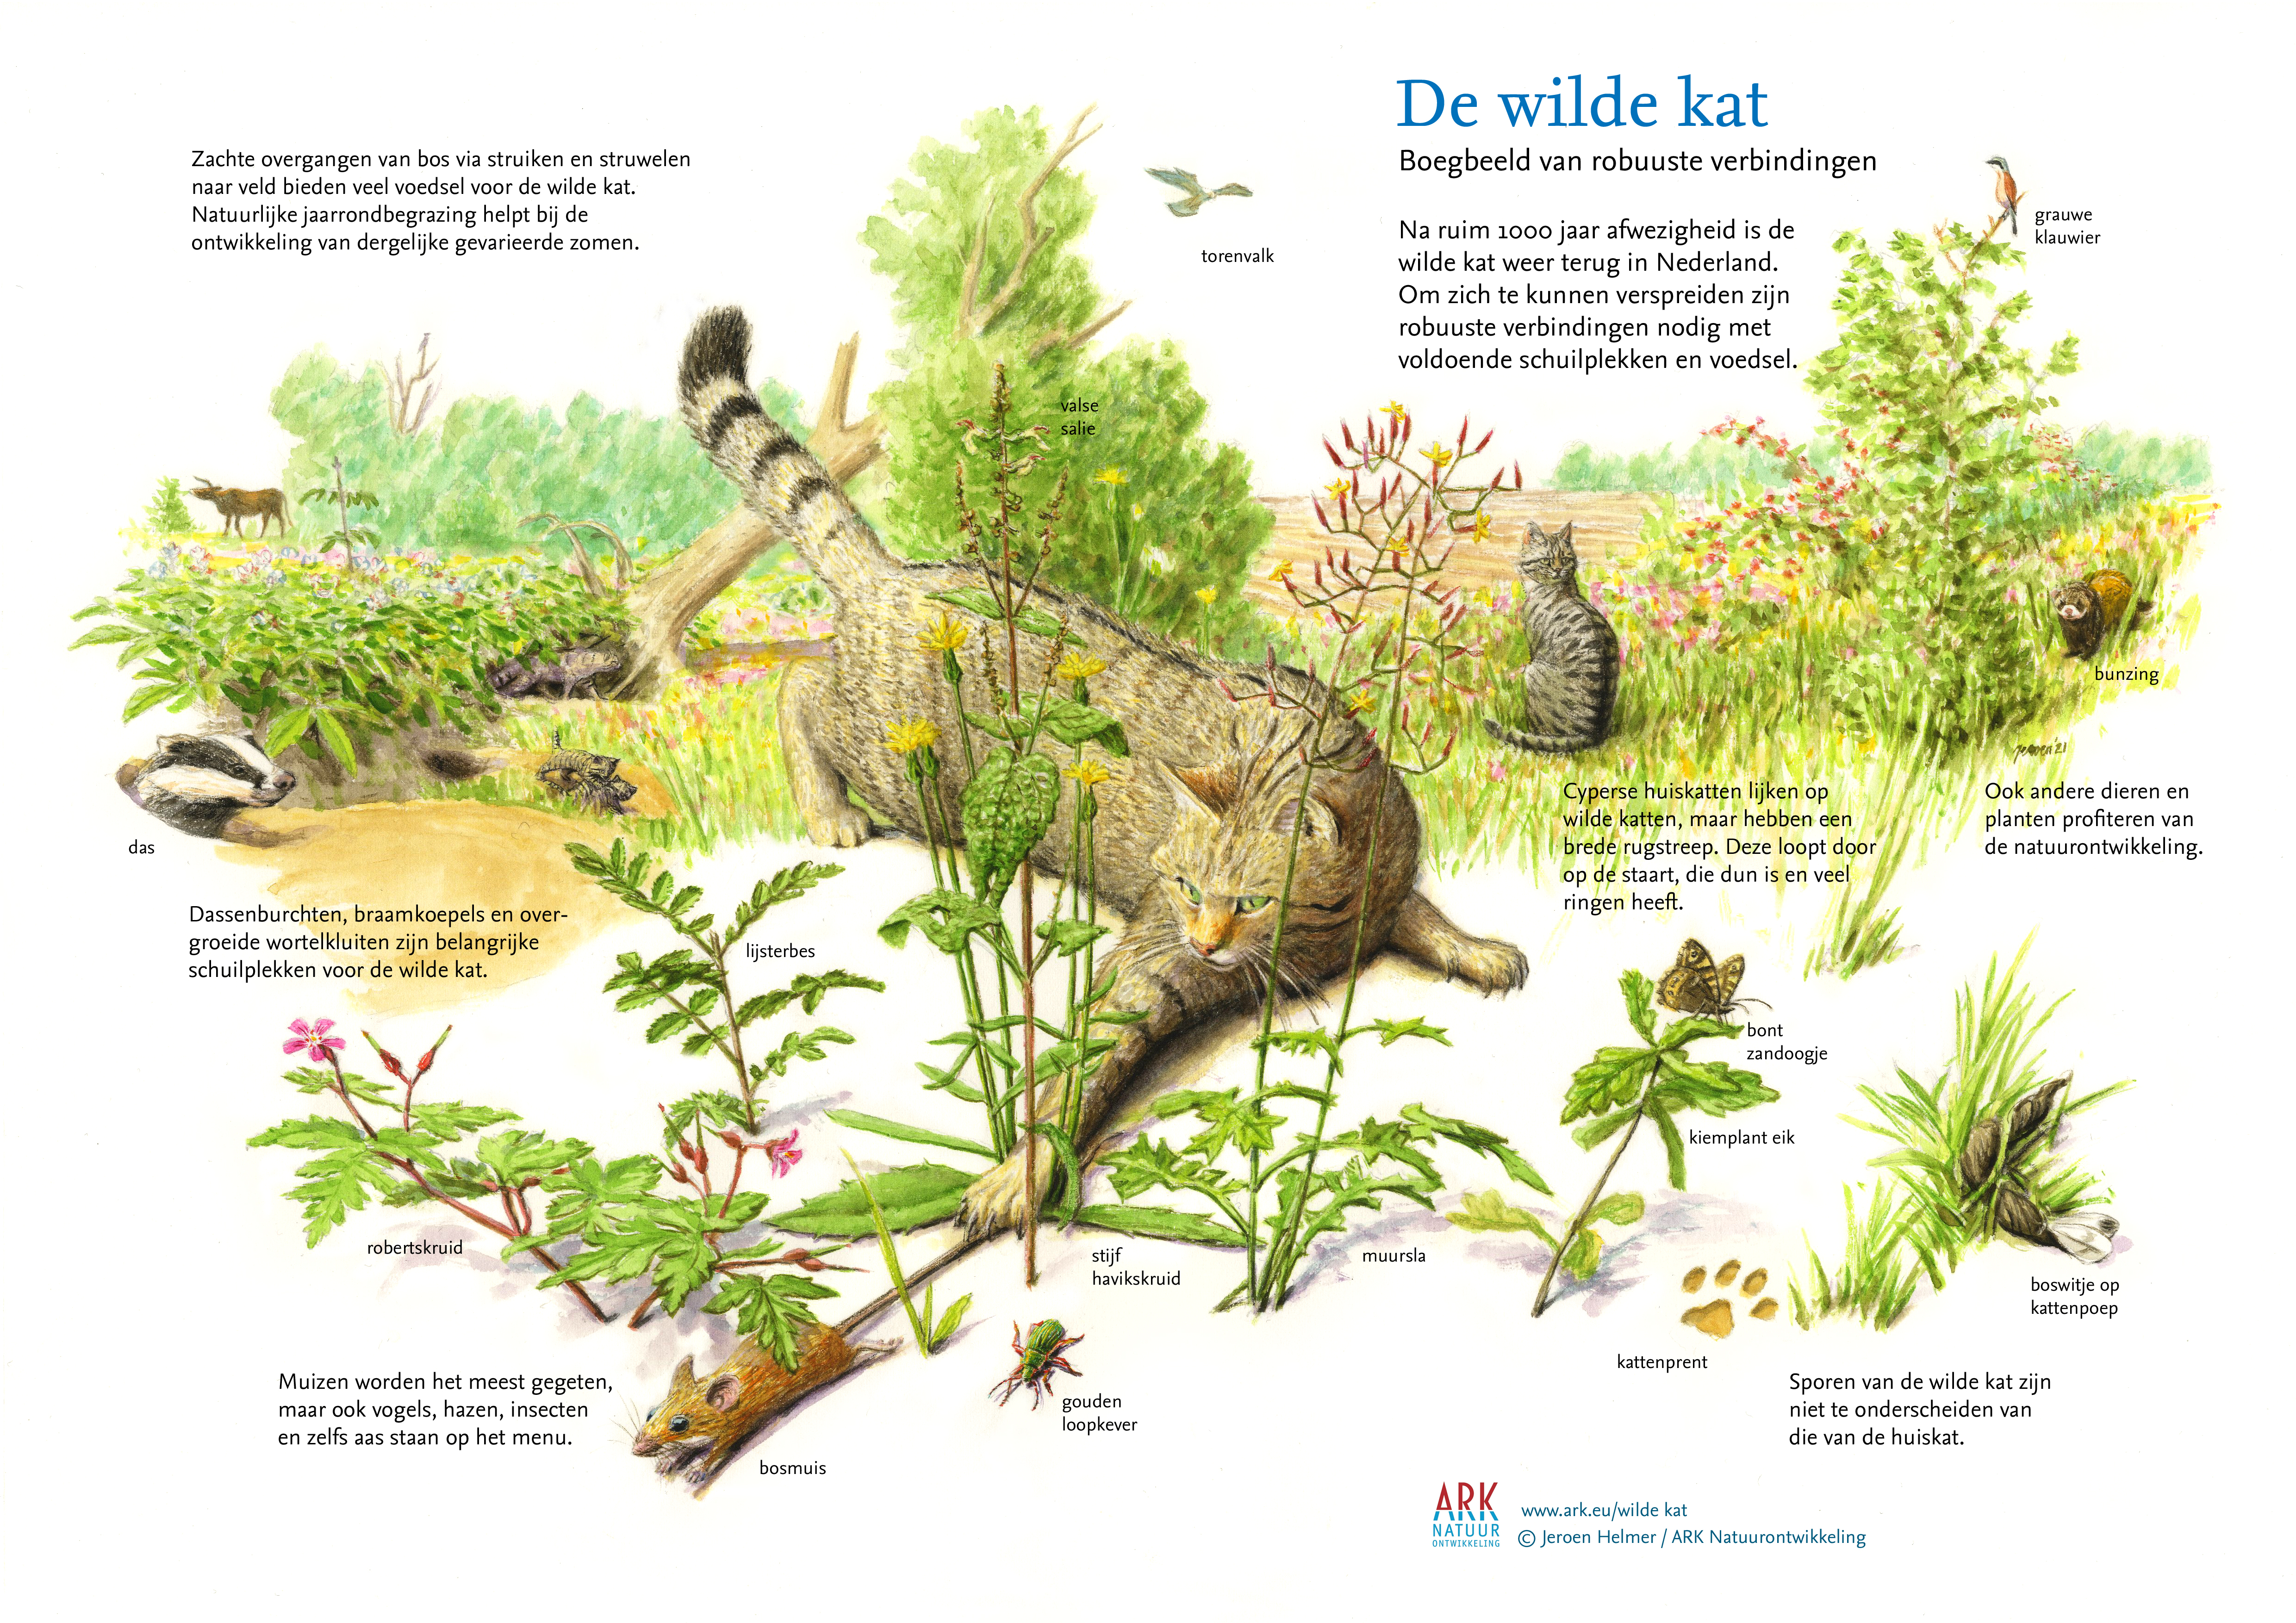 ARK’er Jeroen Helmer maakte dit prachtige portret van de wilde kat in zijn natuurlijke omgeving.